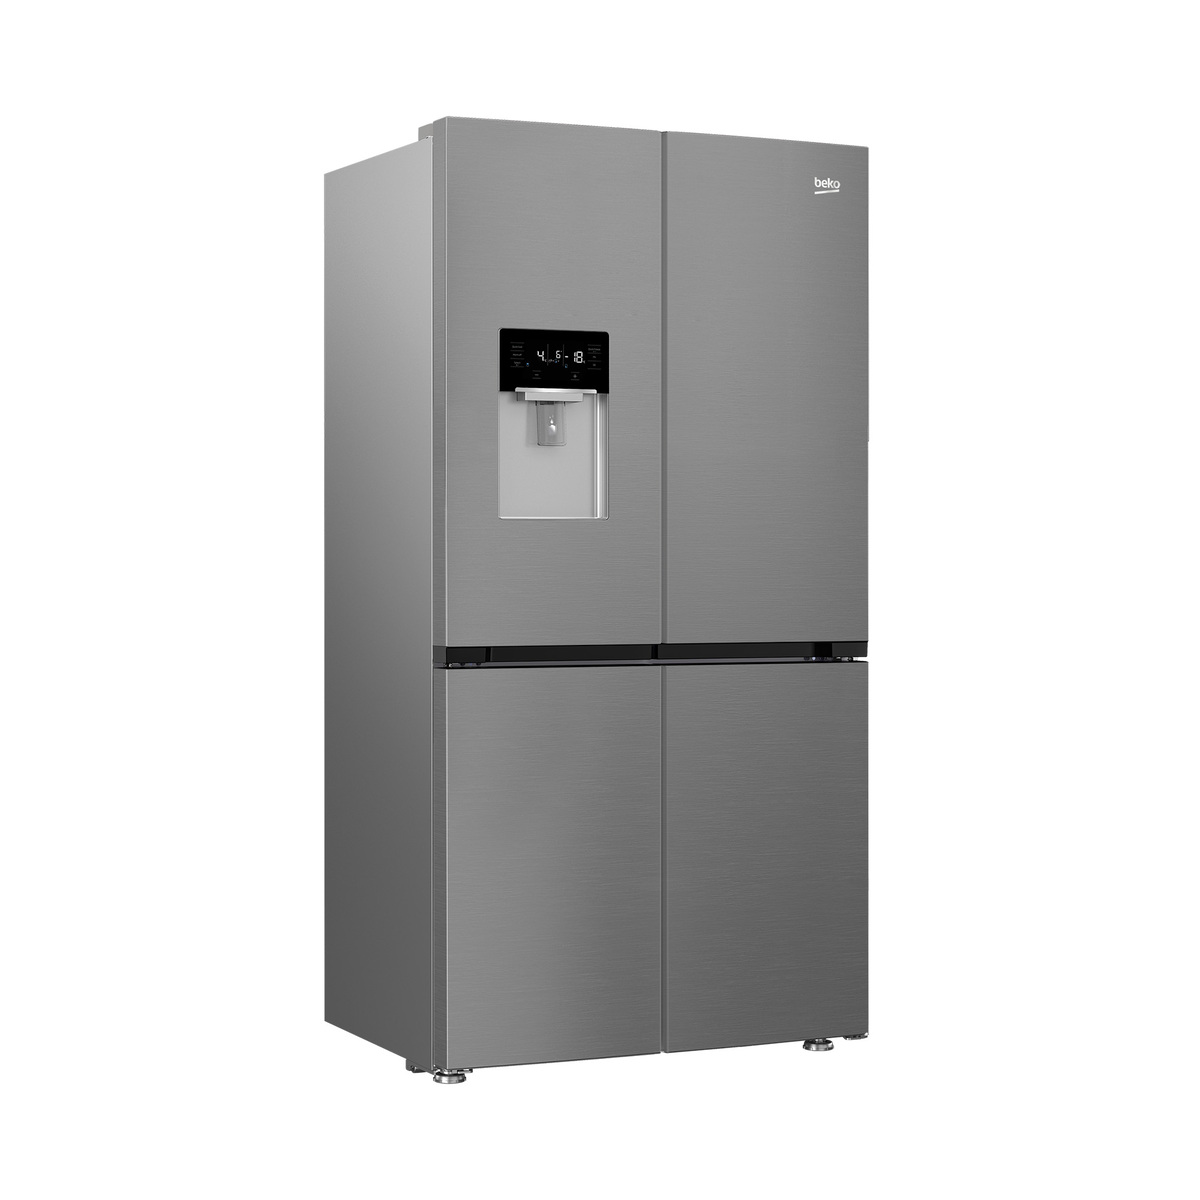 Beko Side-By-Side Refrigerator GNE794DX 624L